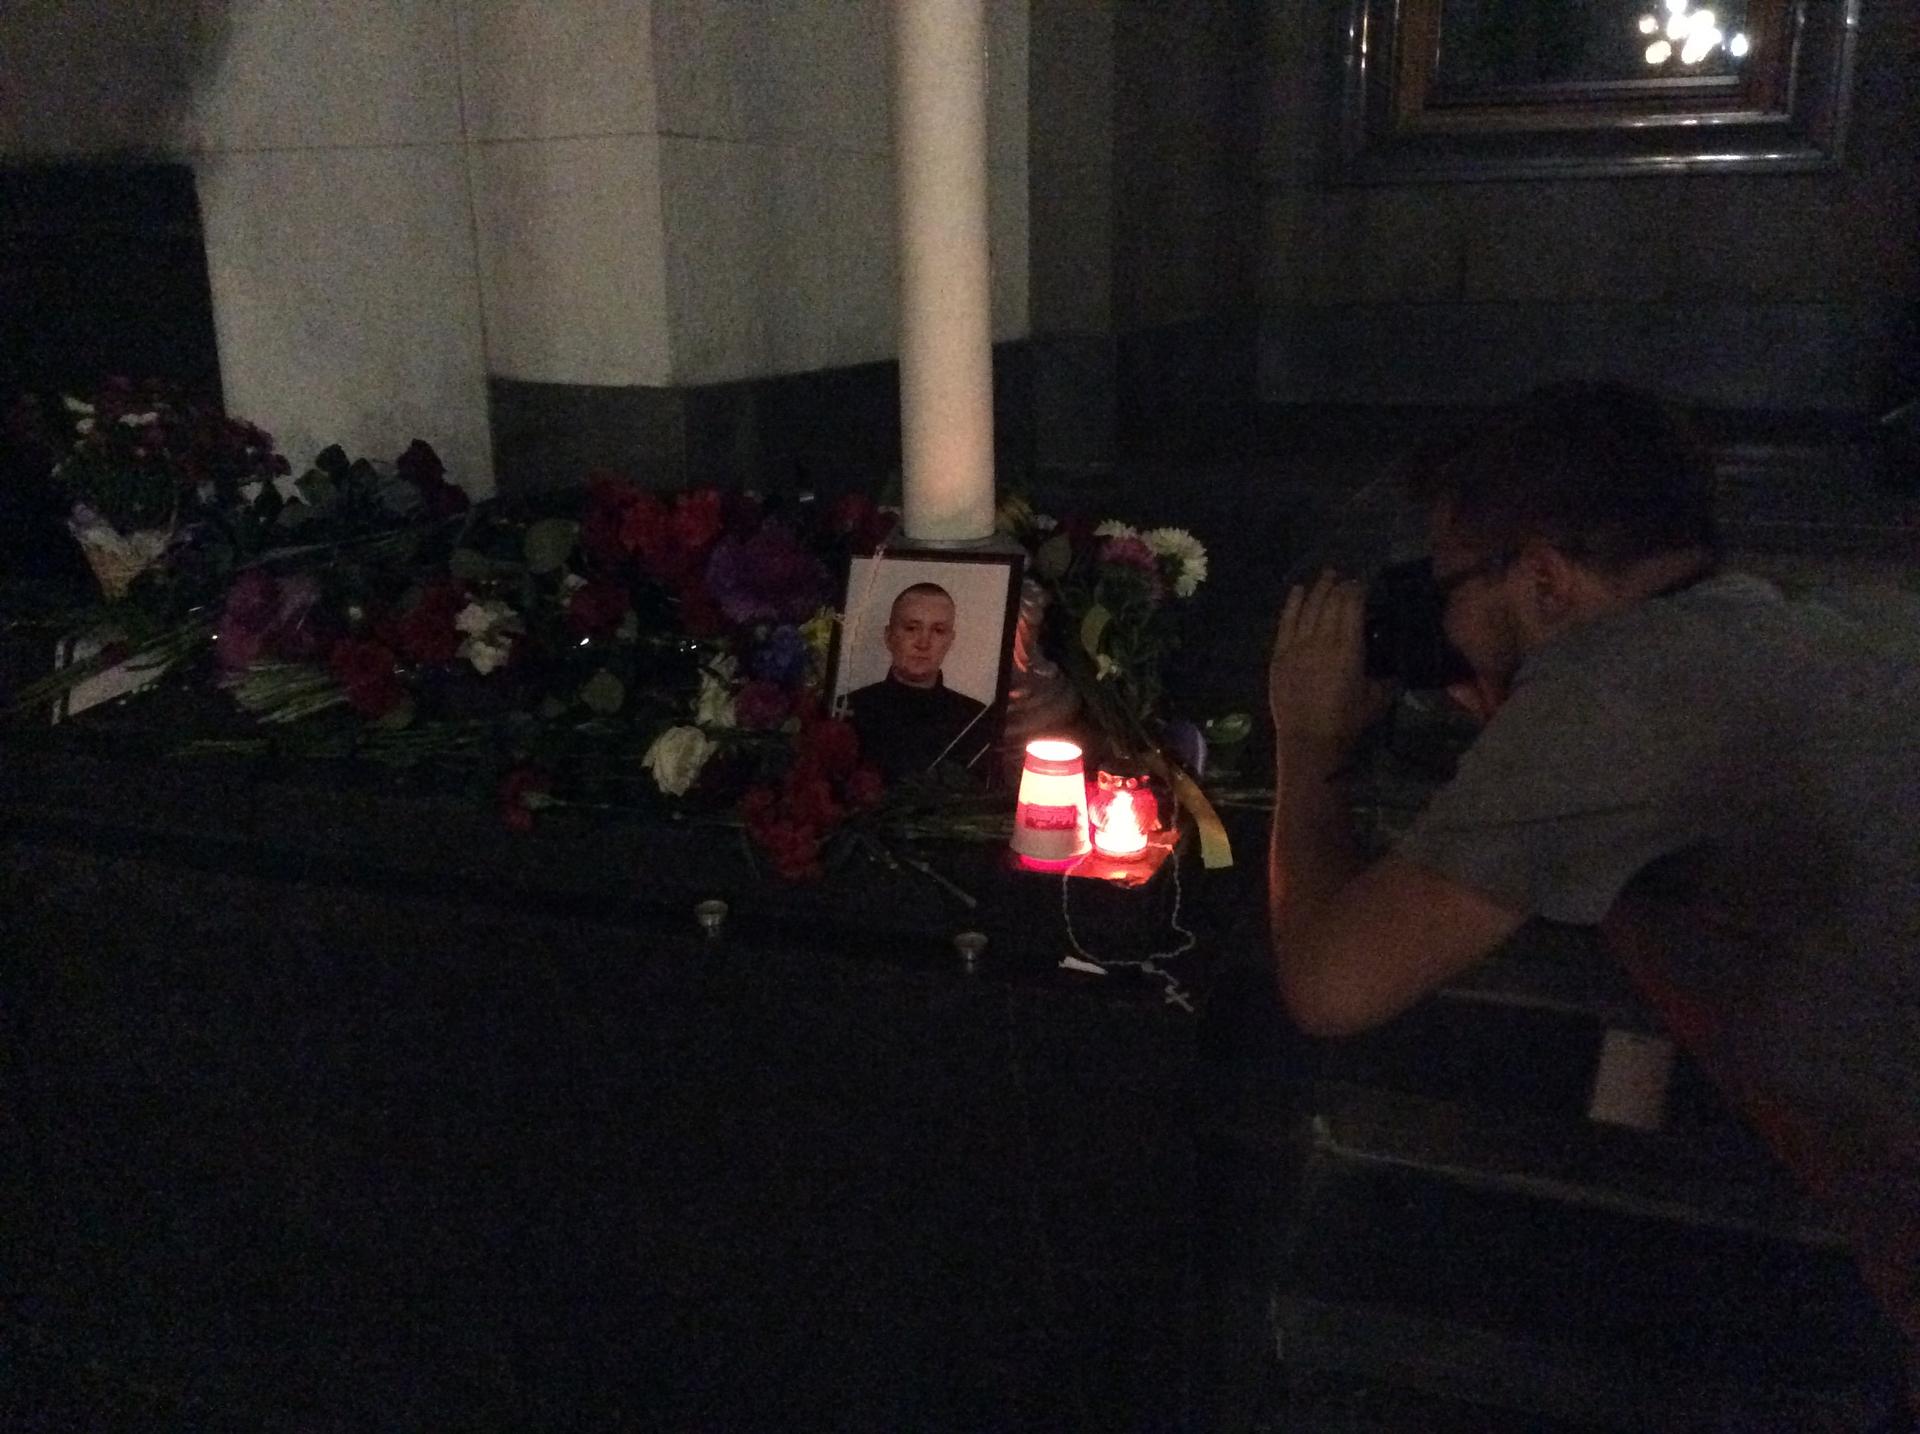 Memorial to a Ukrainian soldier